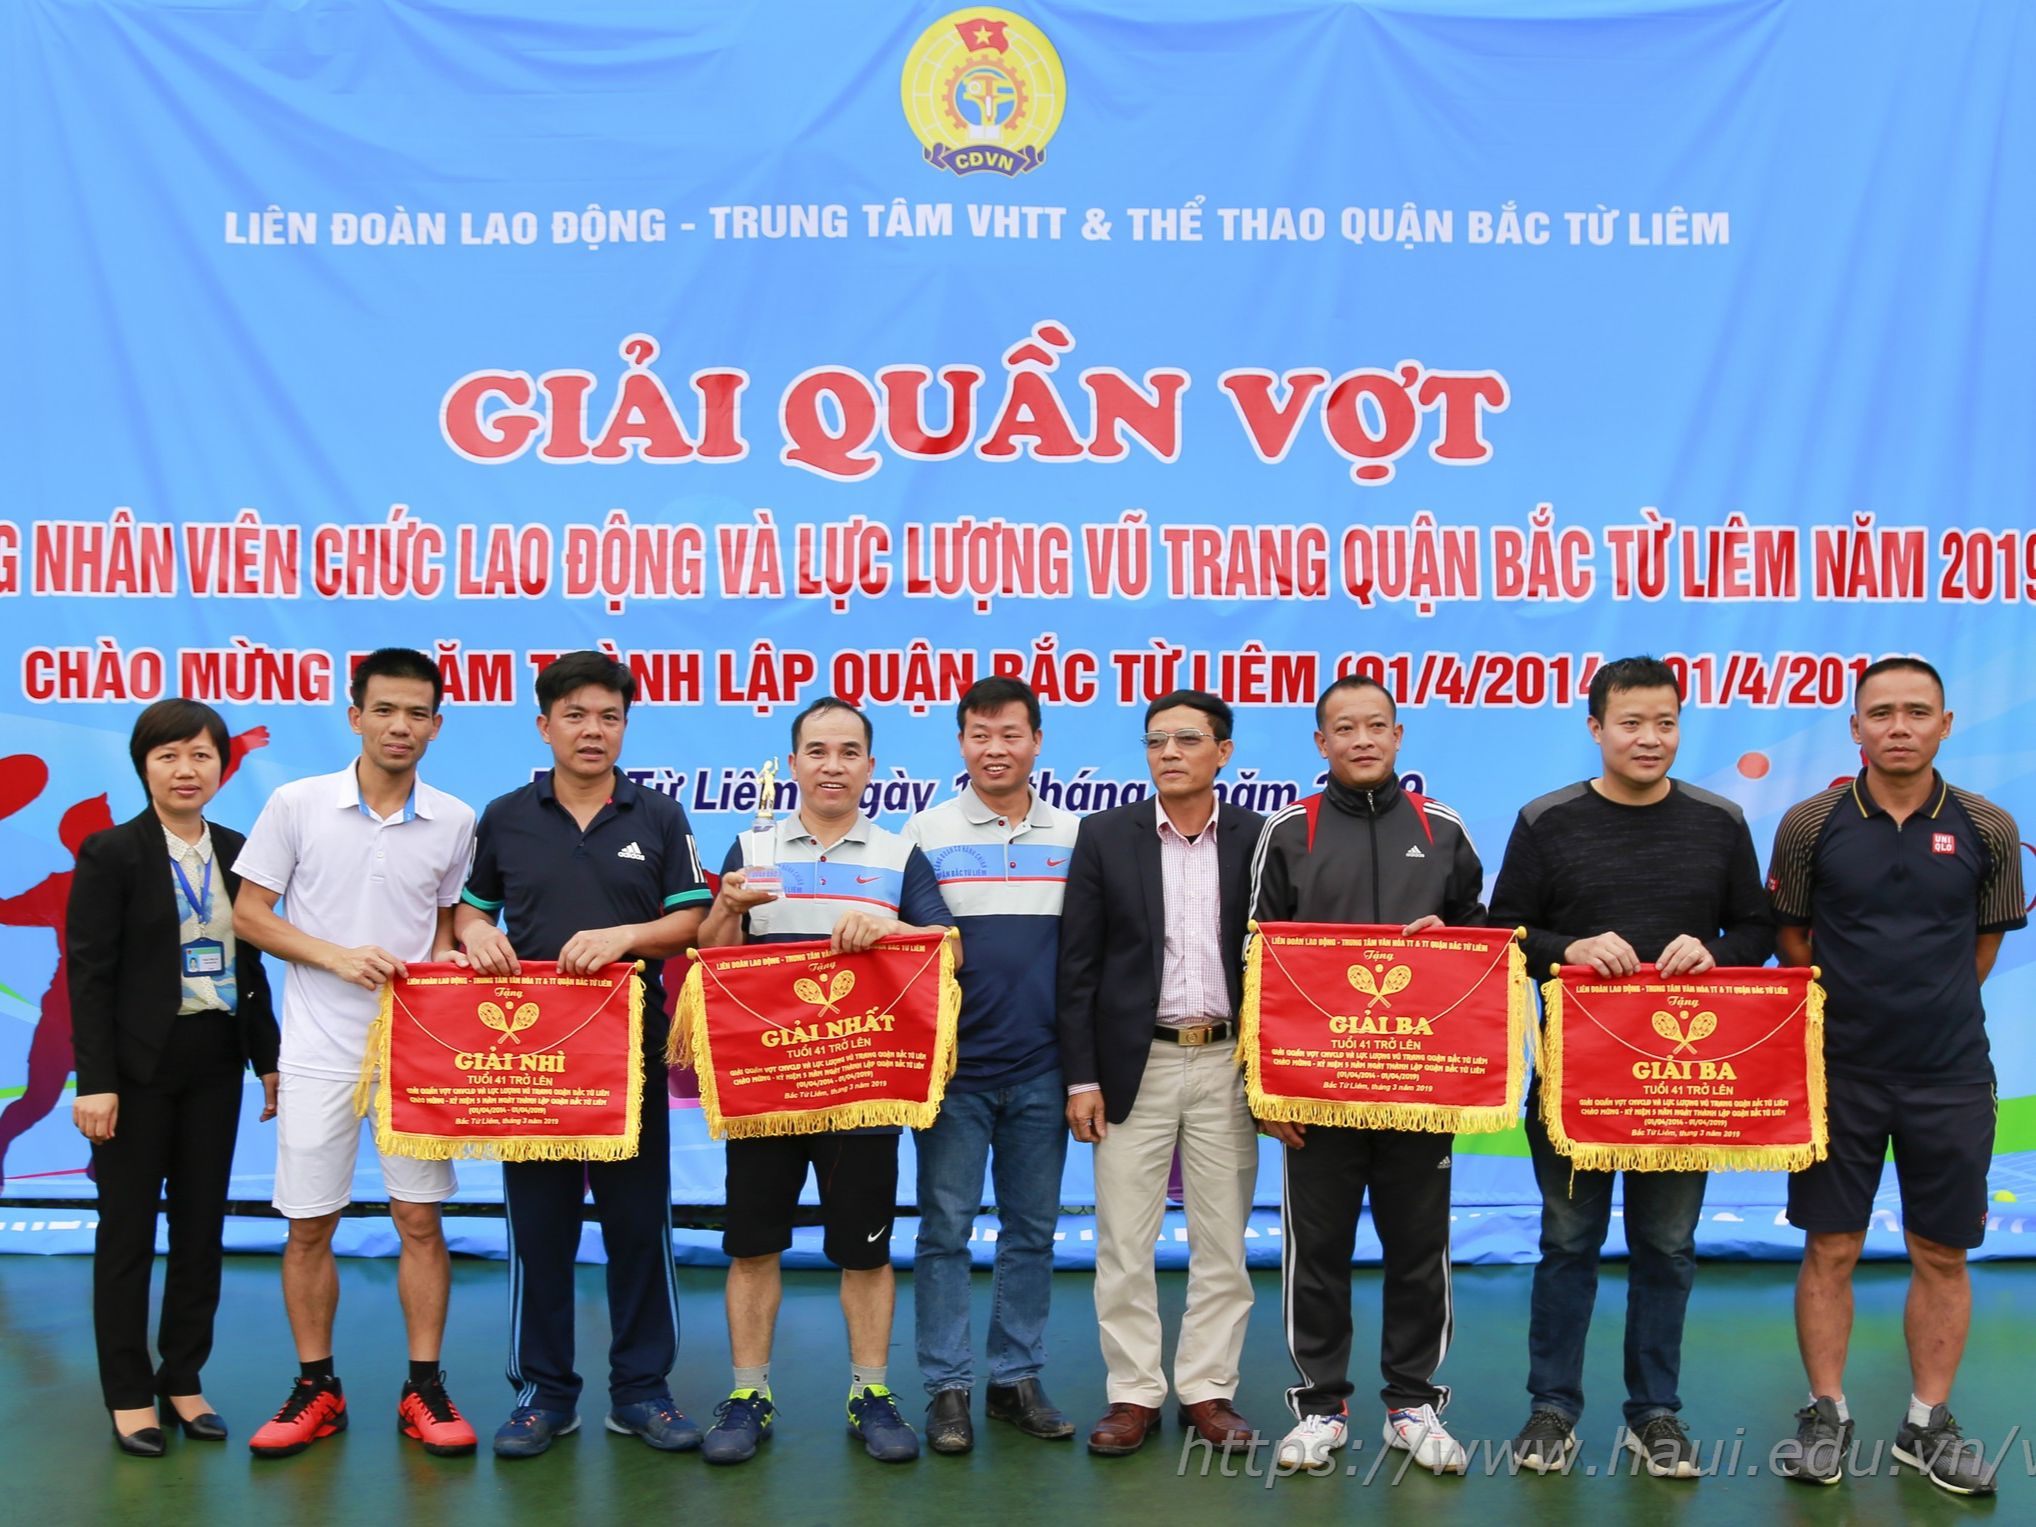 Giải quần vợt công nhân viên chức, người lao động và LLVT quận Bắc Từ Liêm năm 2019